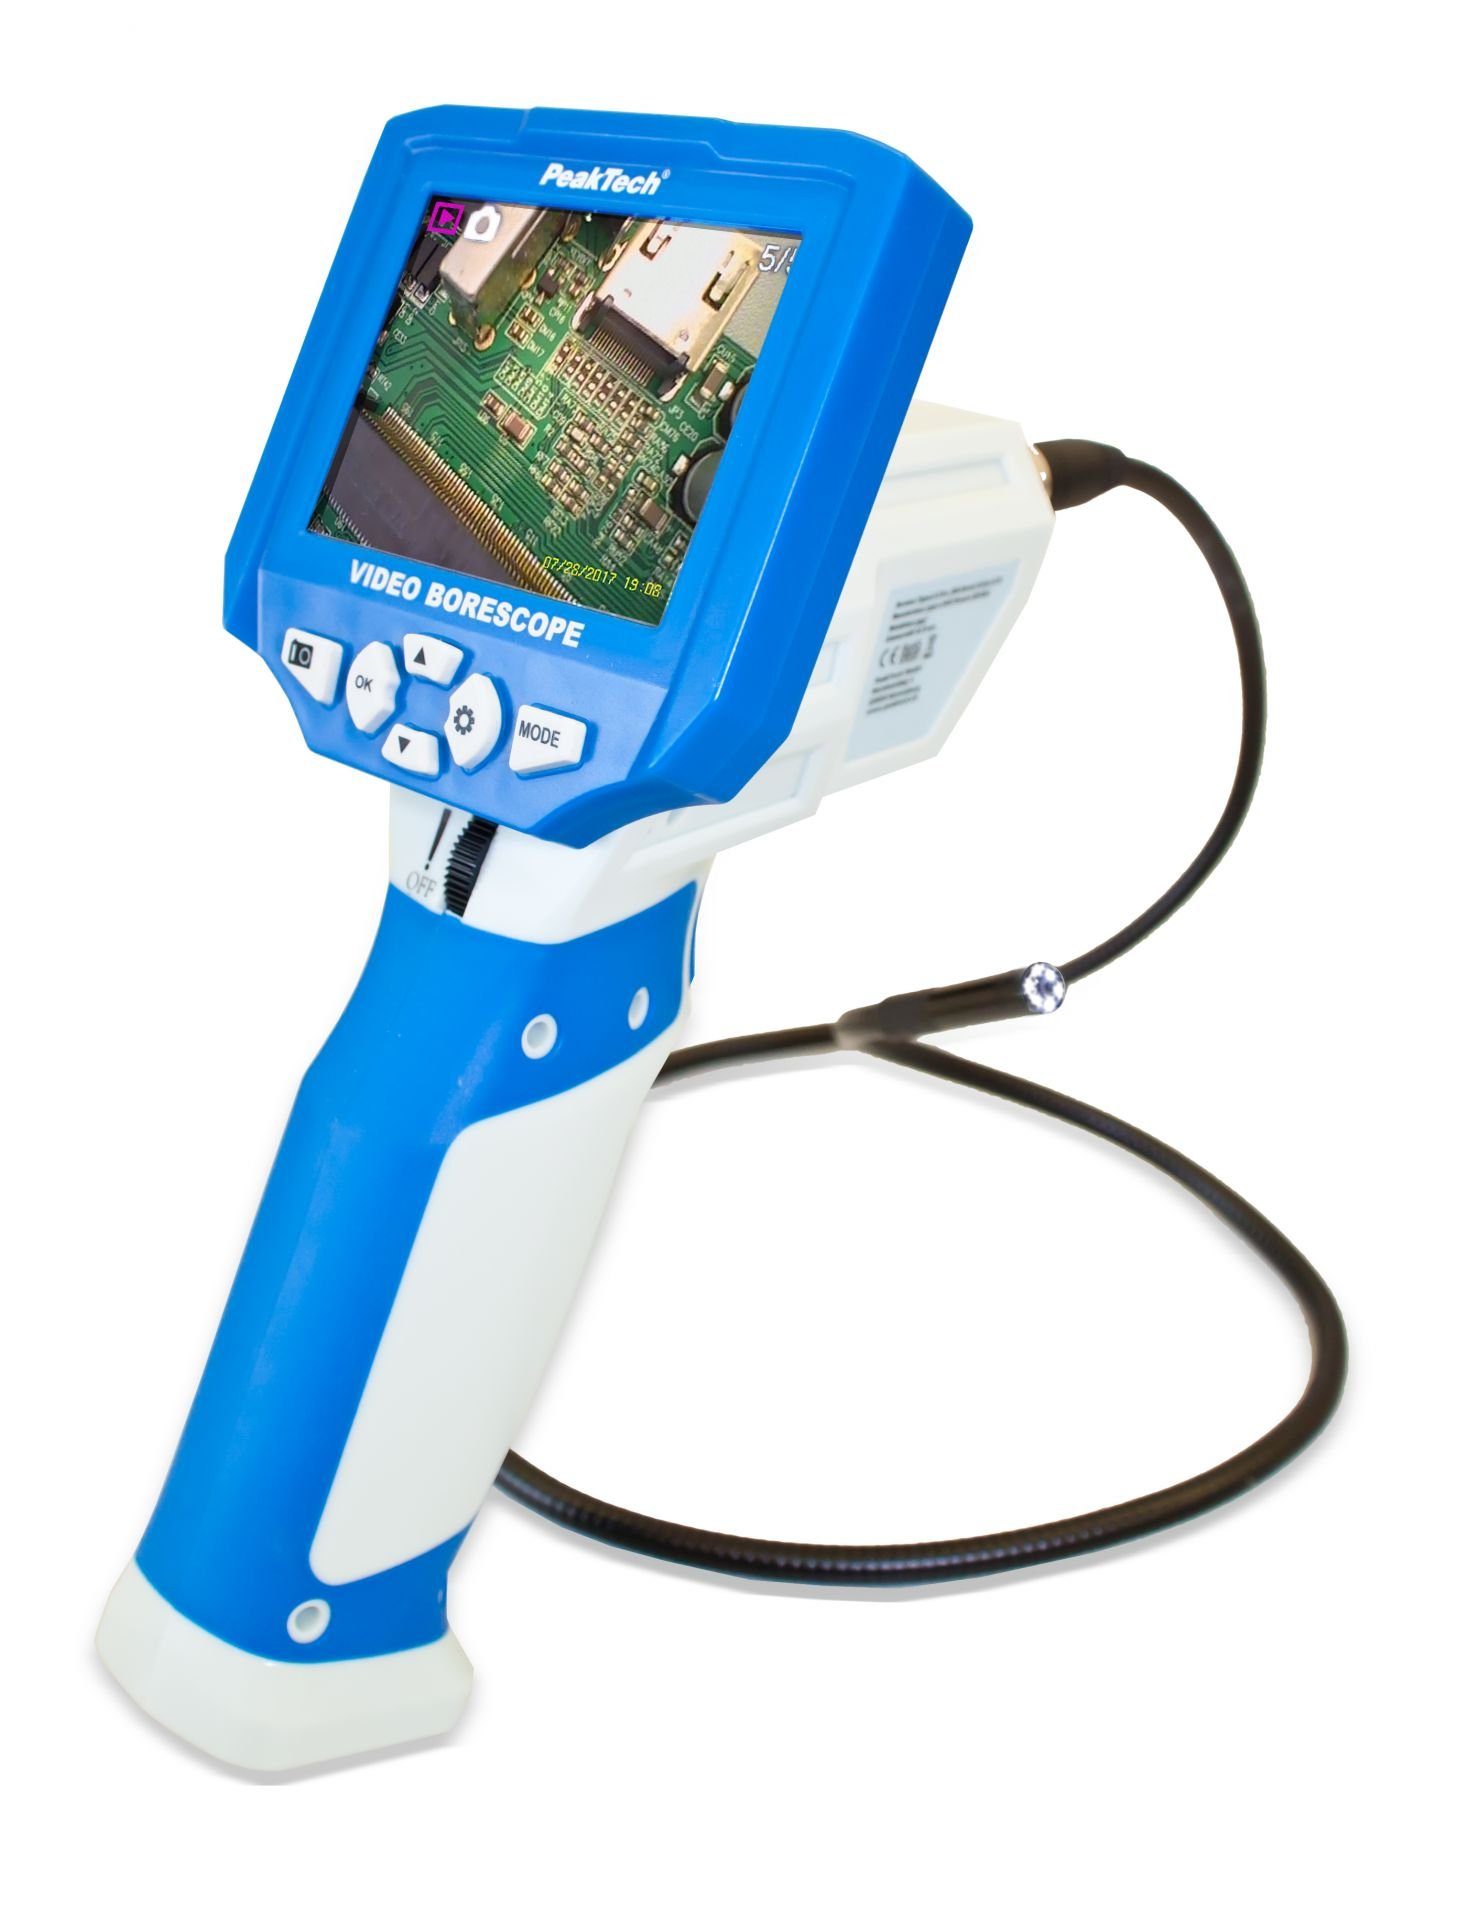 Inspektionskamera Endoskopkamera PeakTech und Videoaufzeichnung PeakTech Video 5600: Bild- ~